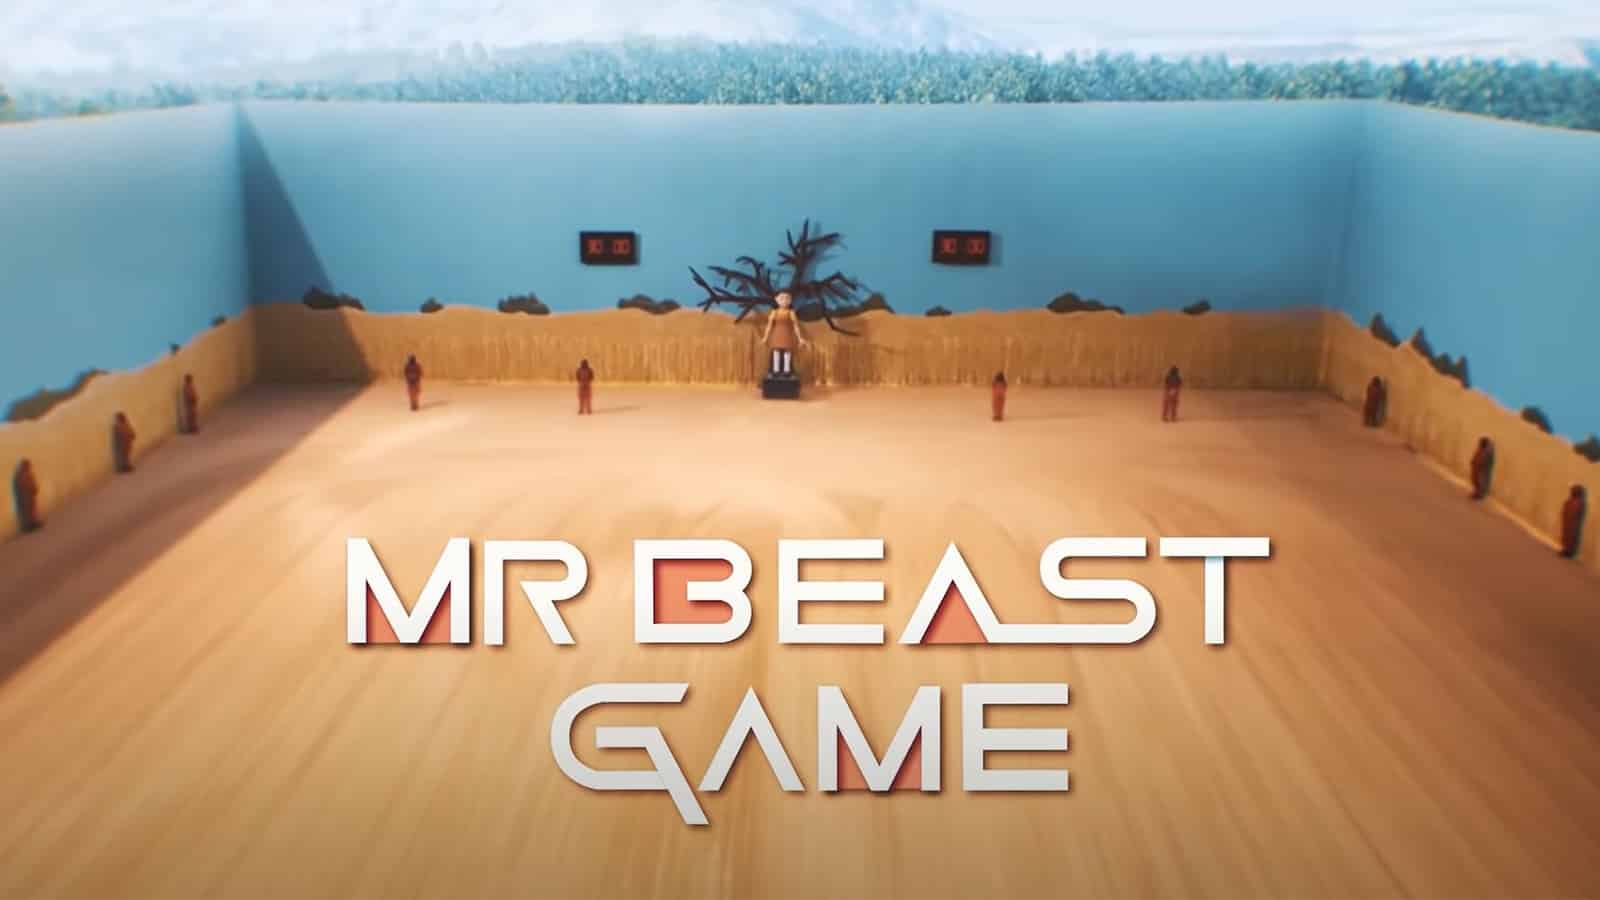 MrBeast Squid game video goes viral